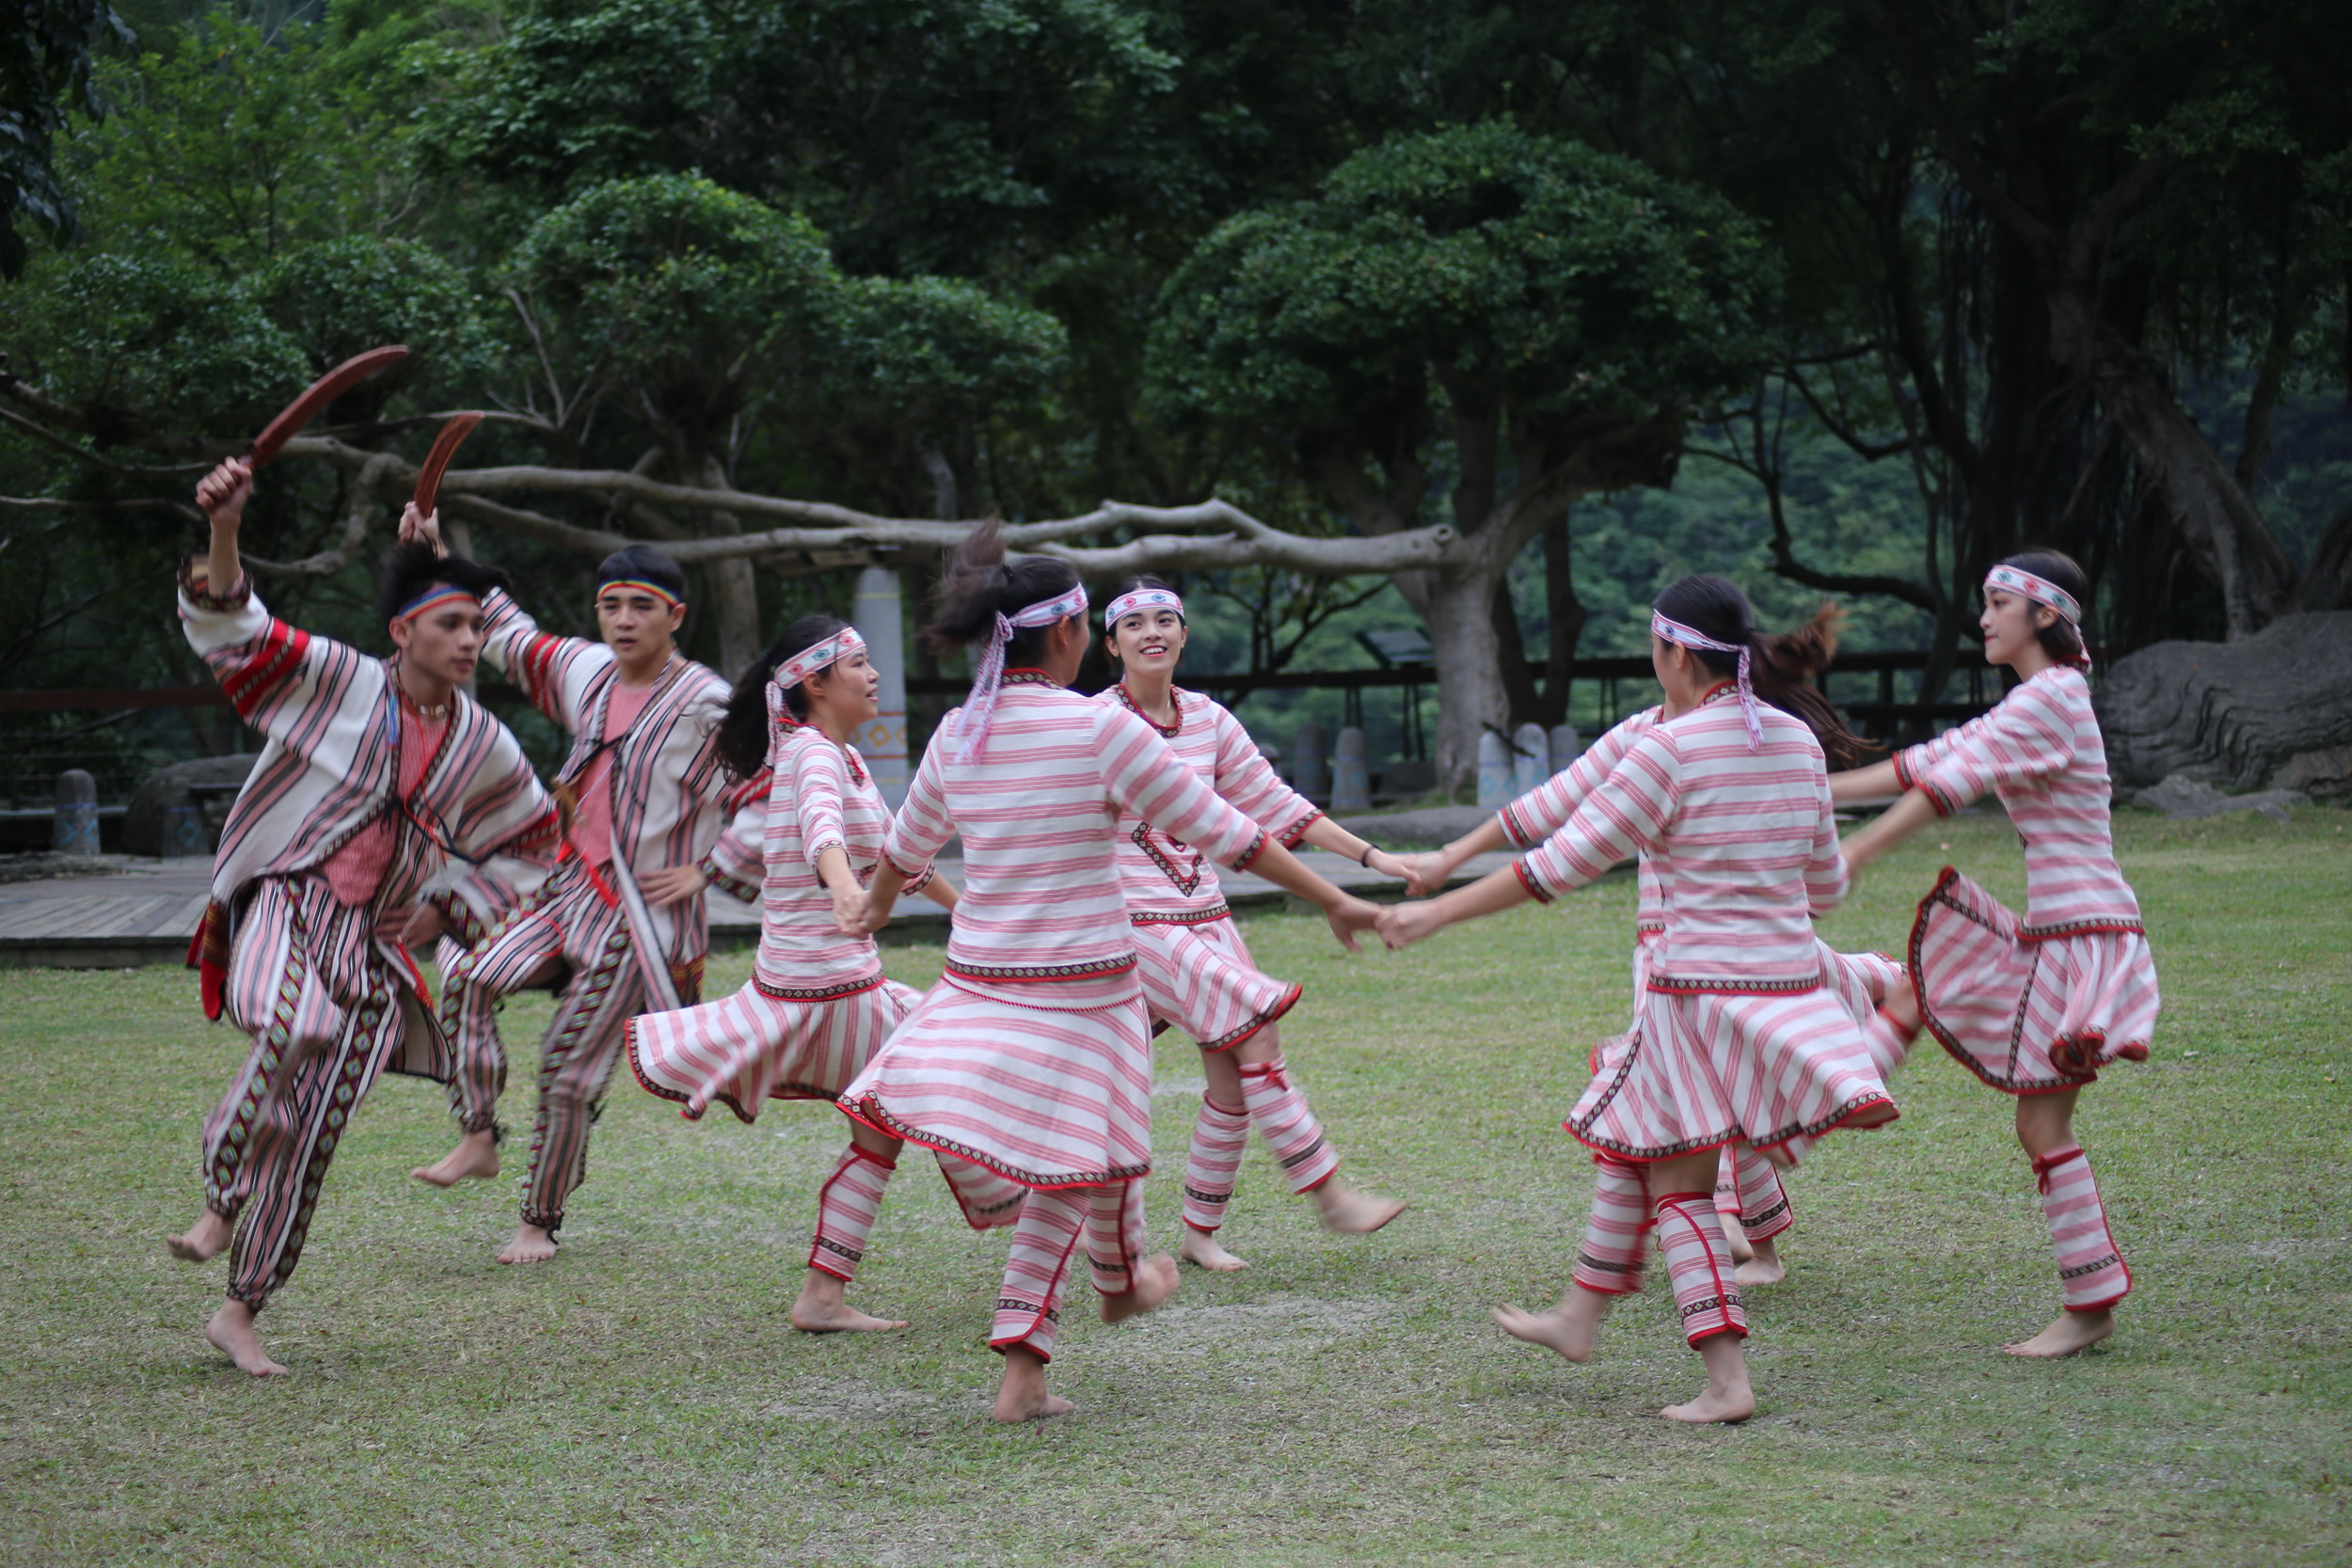 タロコ部落コンサートを:伝統的かつ現代的な音楽およびダンスと融合した、タロコ族の山林文化をご覧いただけます，4枚の写真。